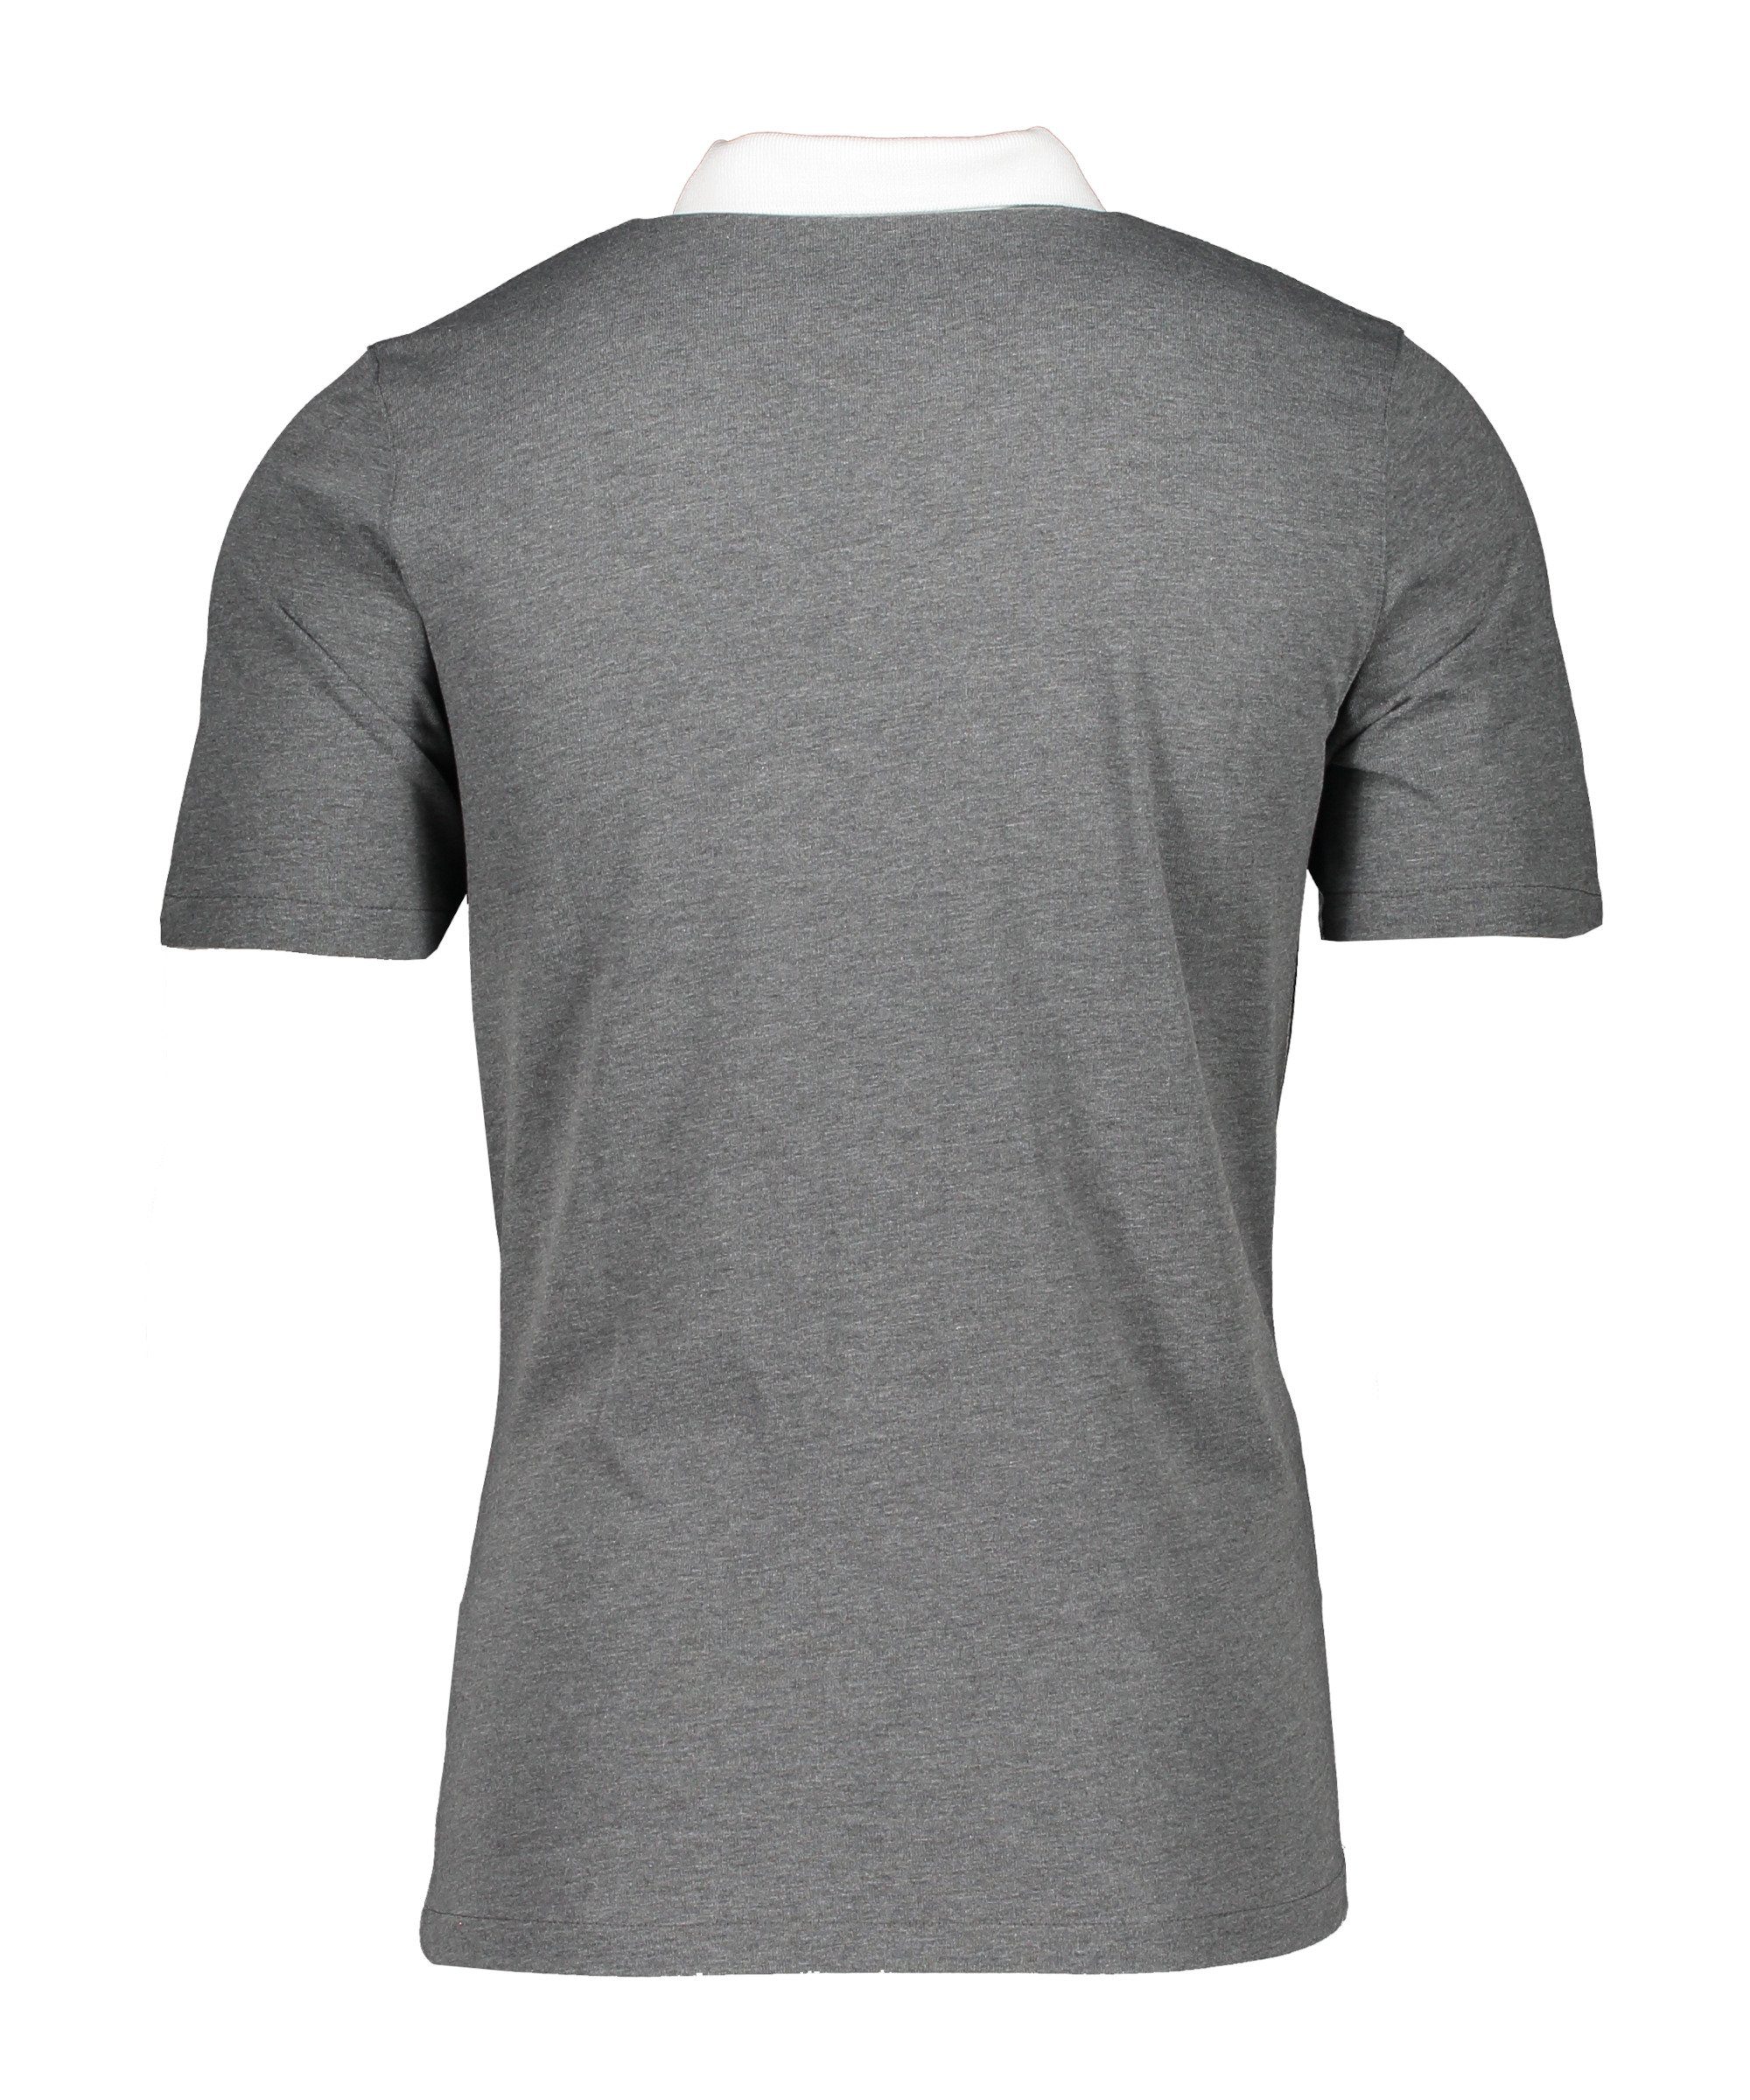 Poloshirt grauweiss 20 T-Shirt Nike default Park